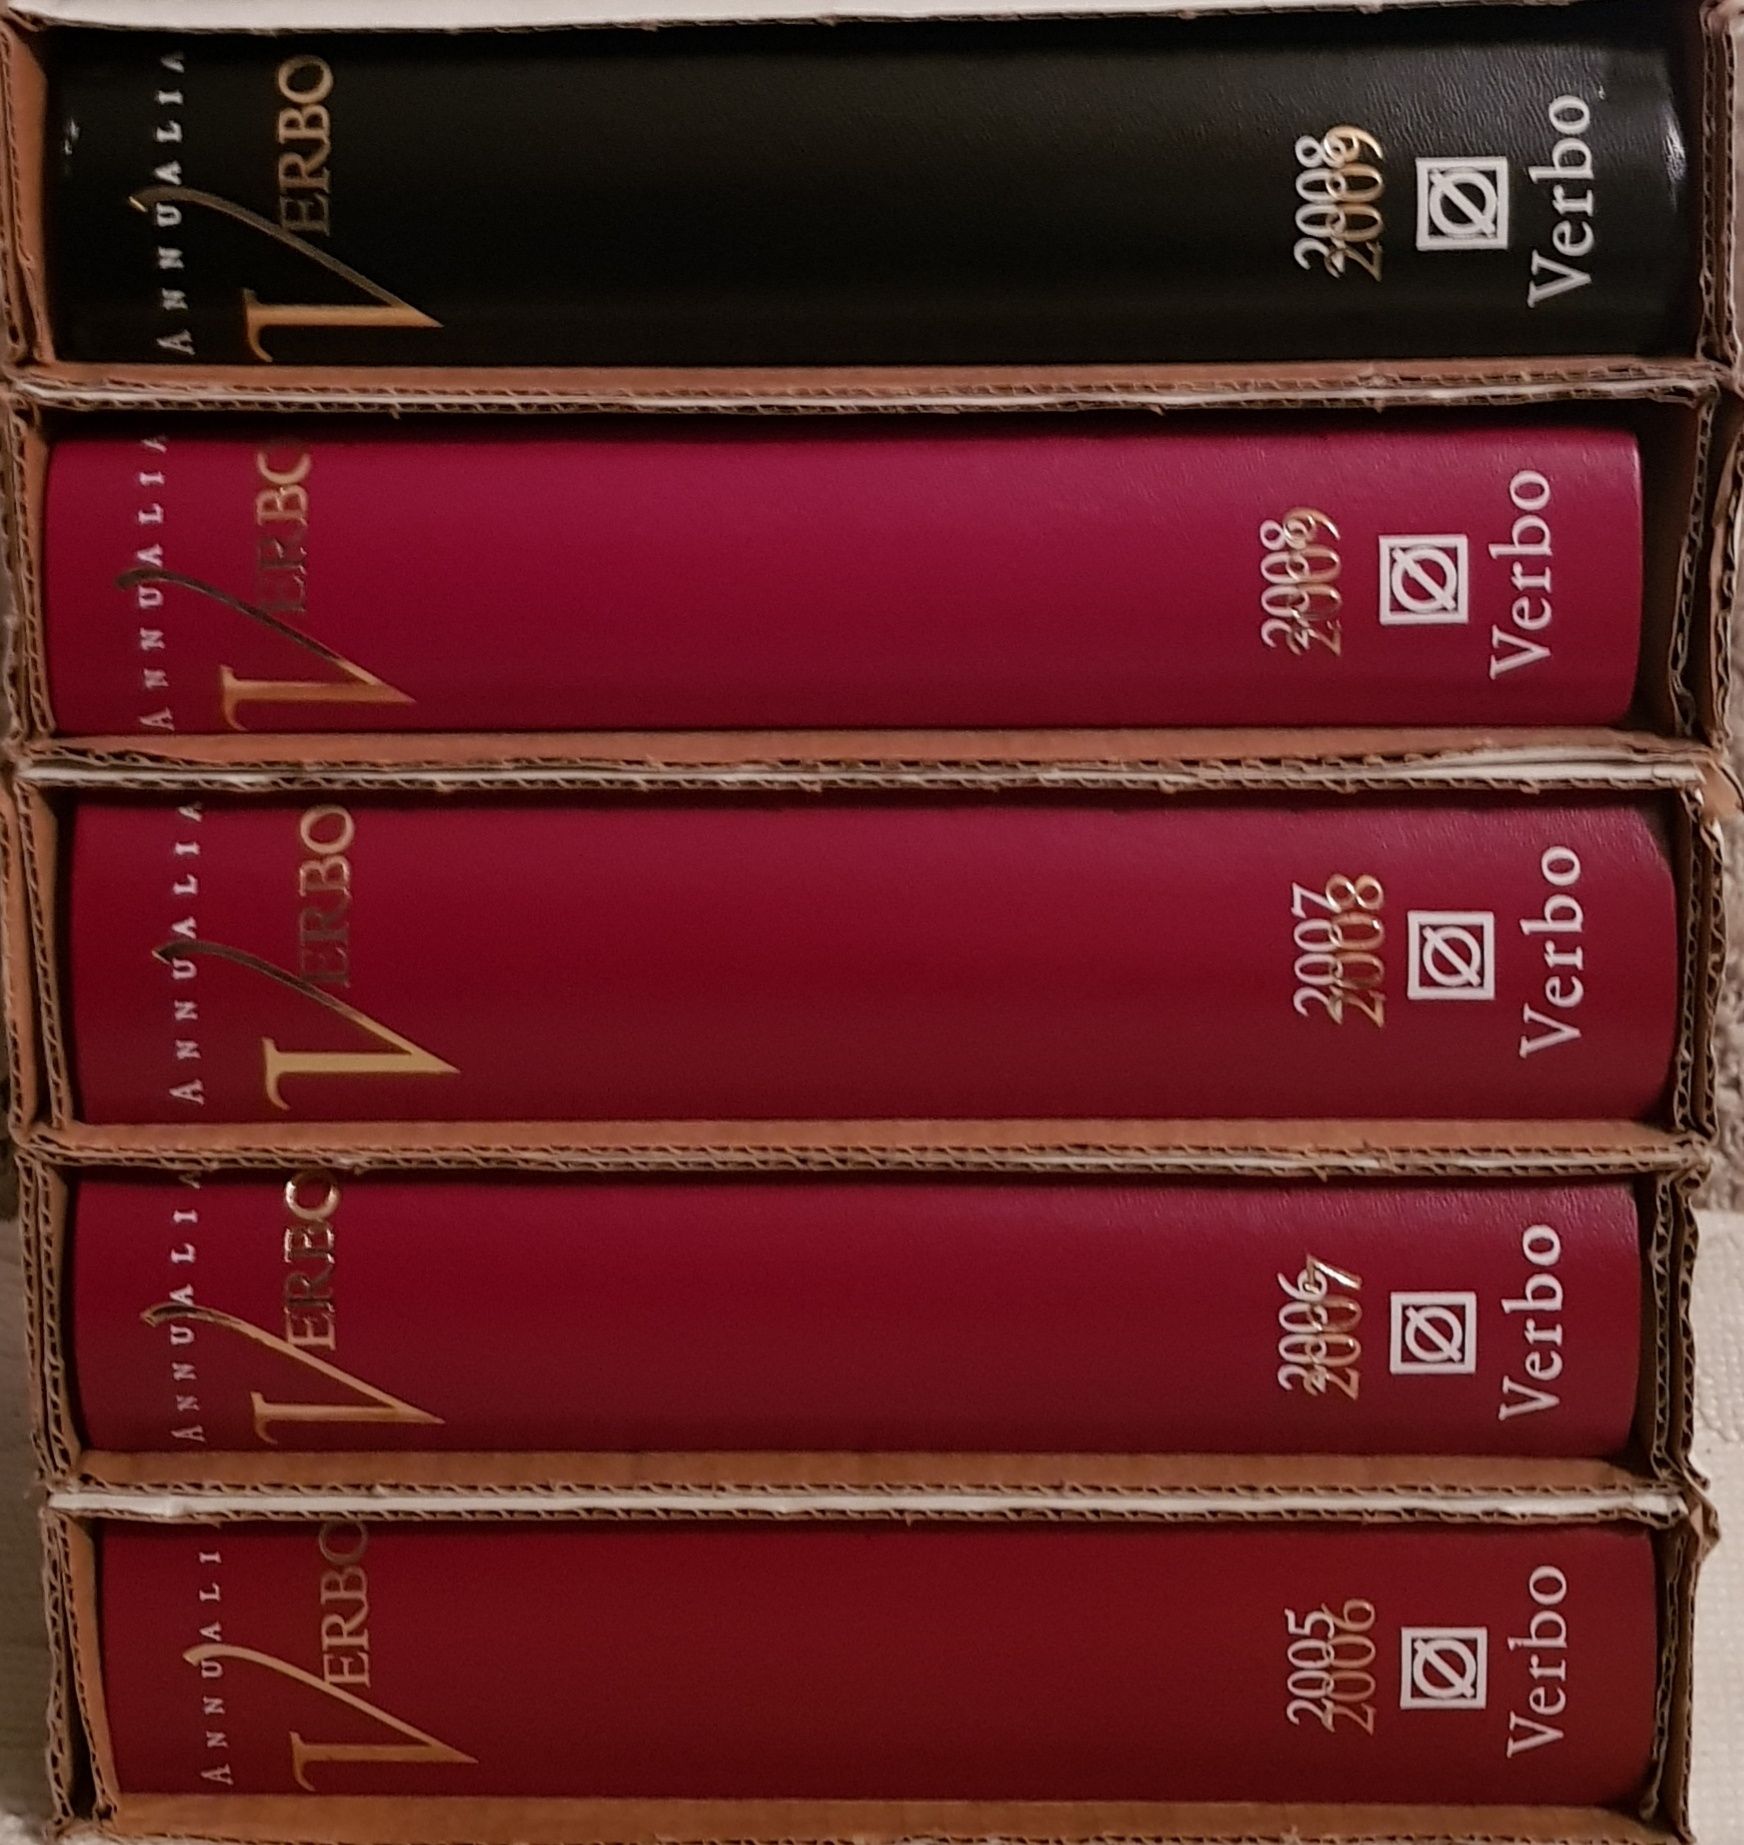 Atualização da Enciclopédia Século XXI - livros novos caixas originais